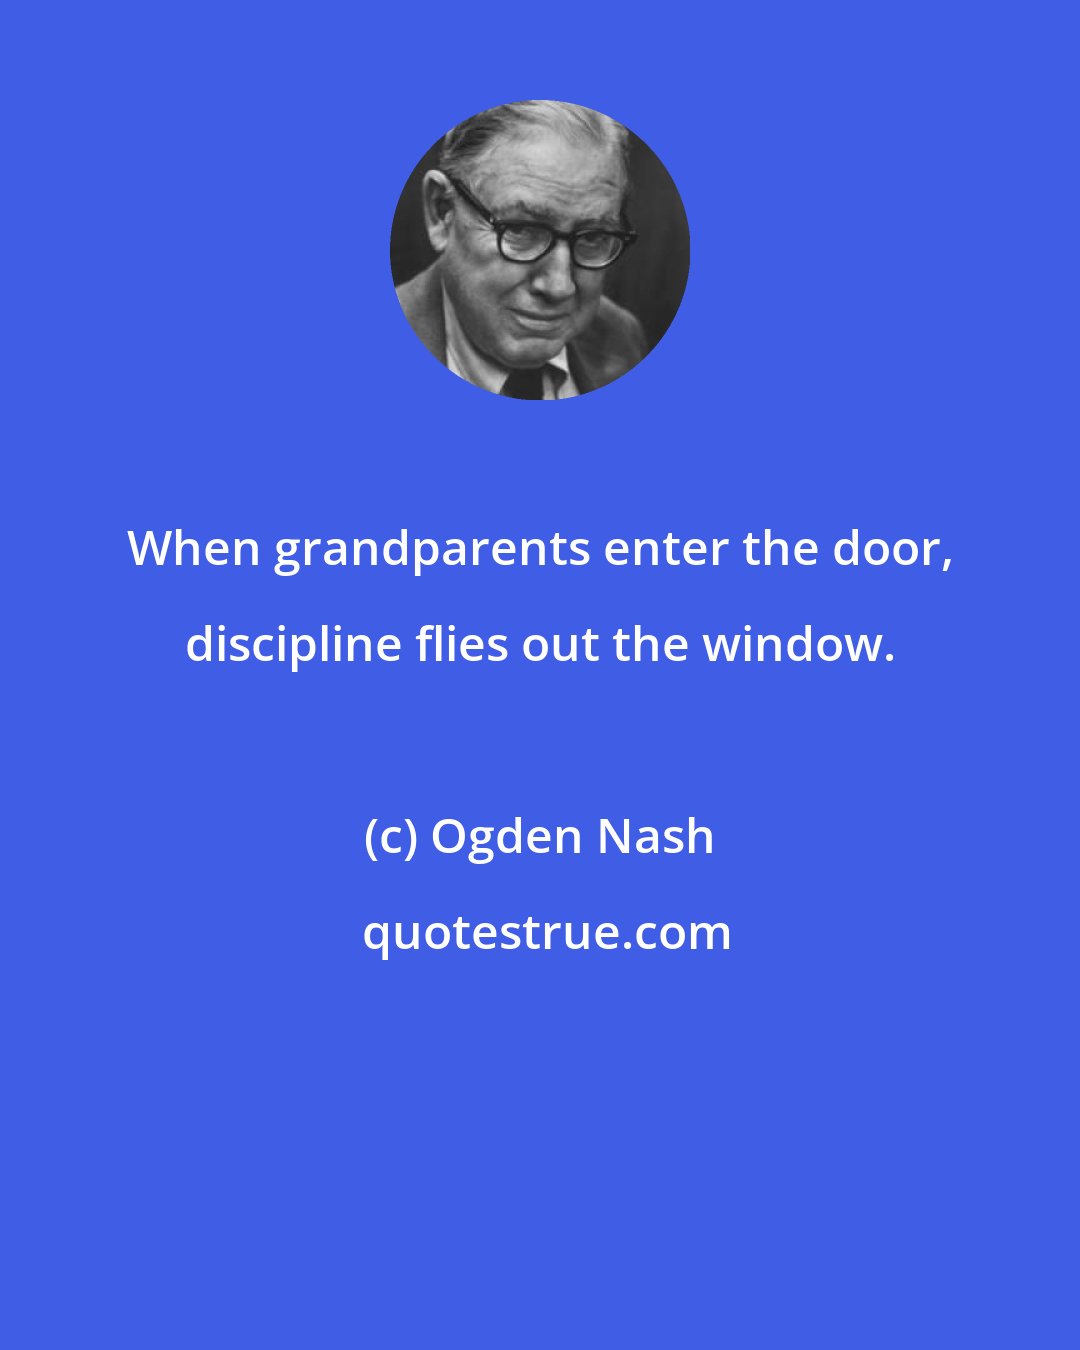 Ogden Nash: When grandparents enter the door, discipline flies out the window.